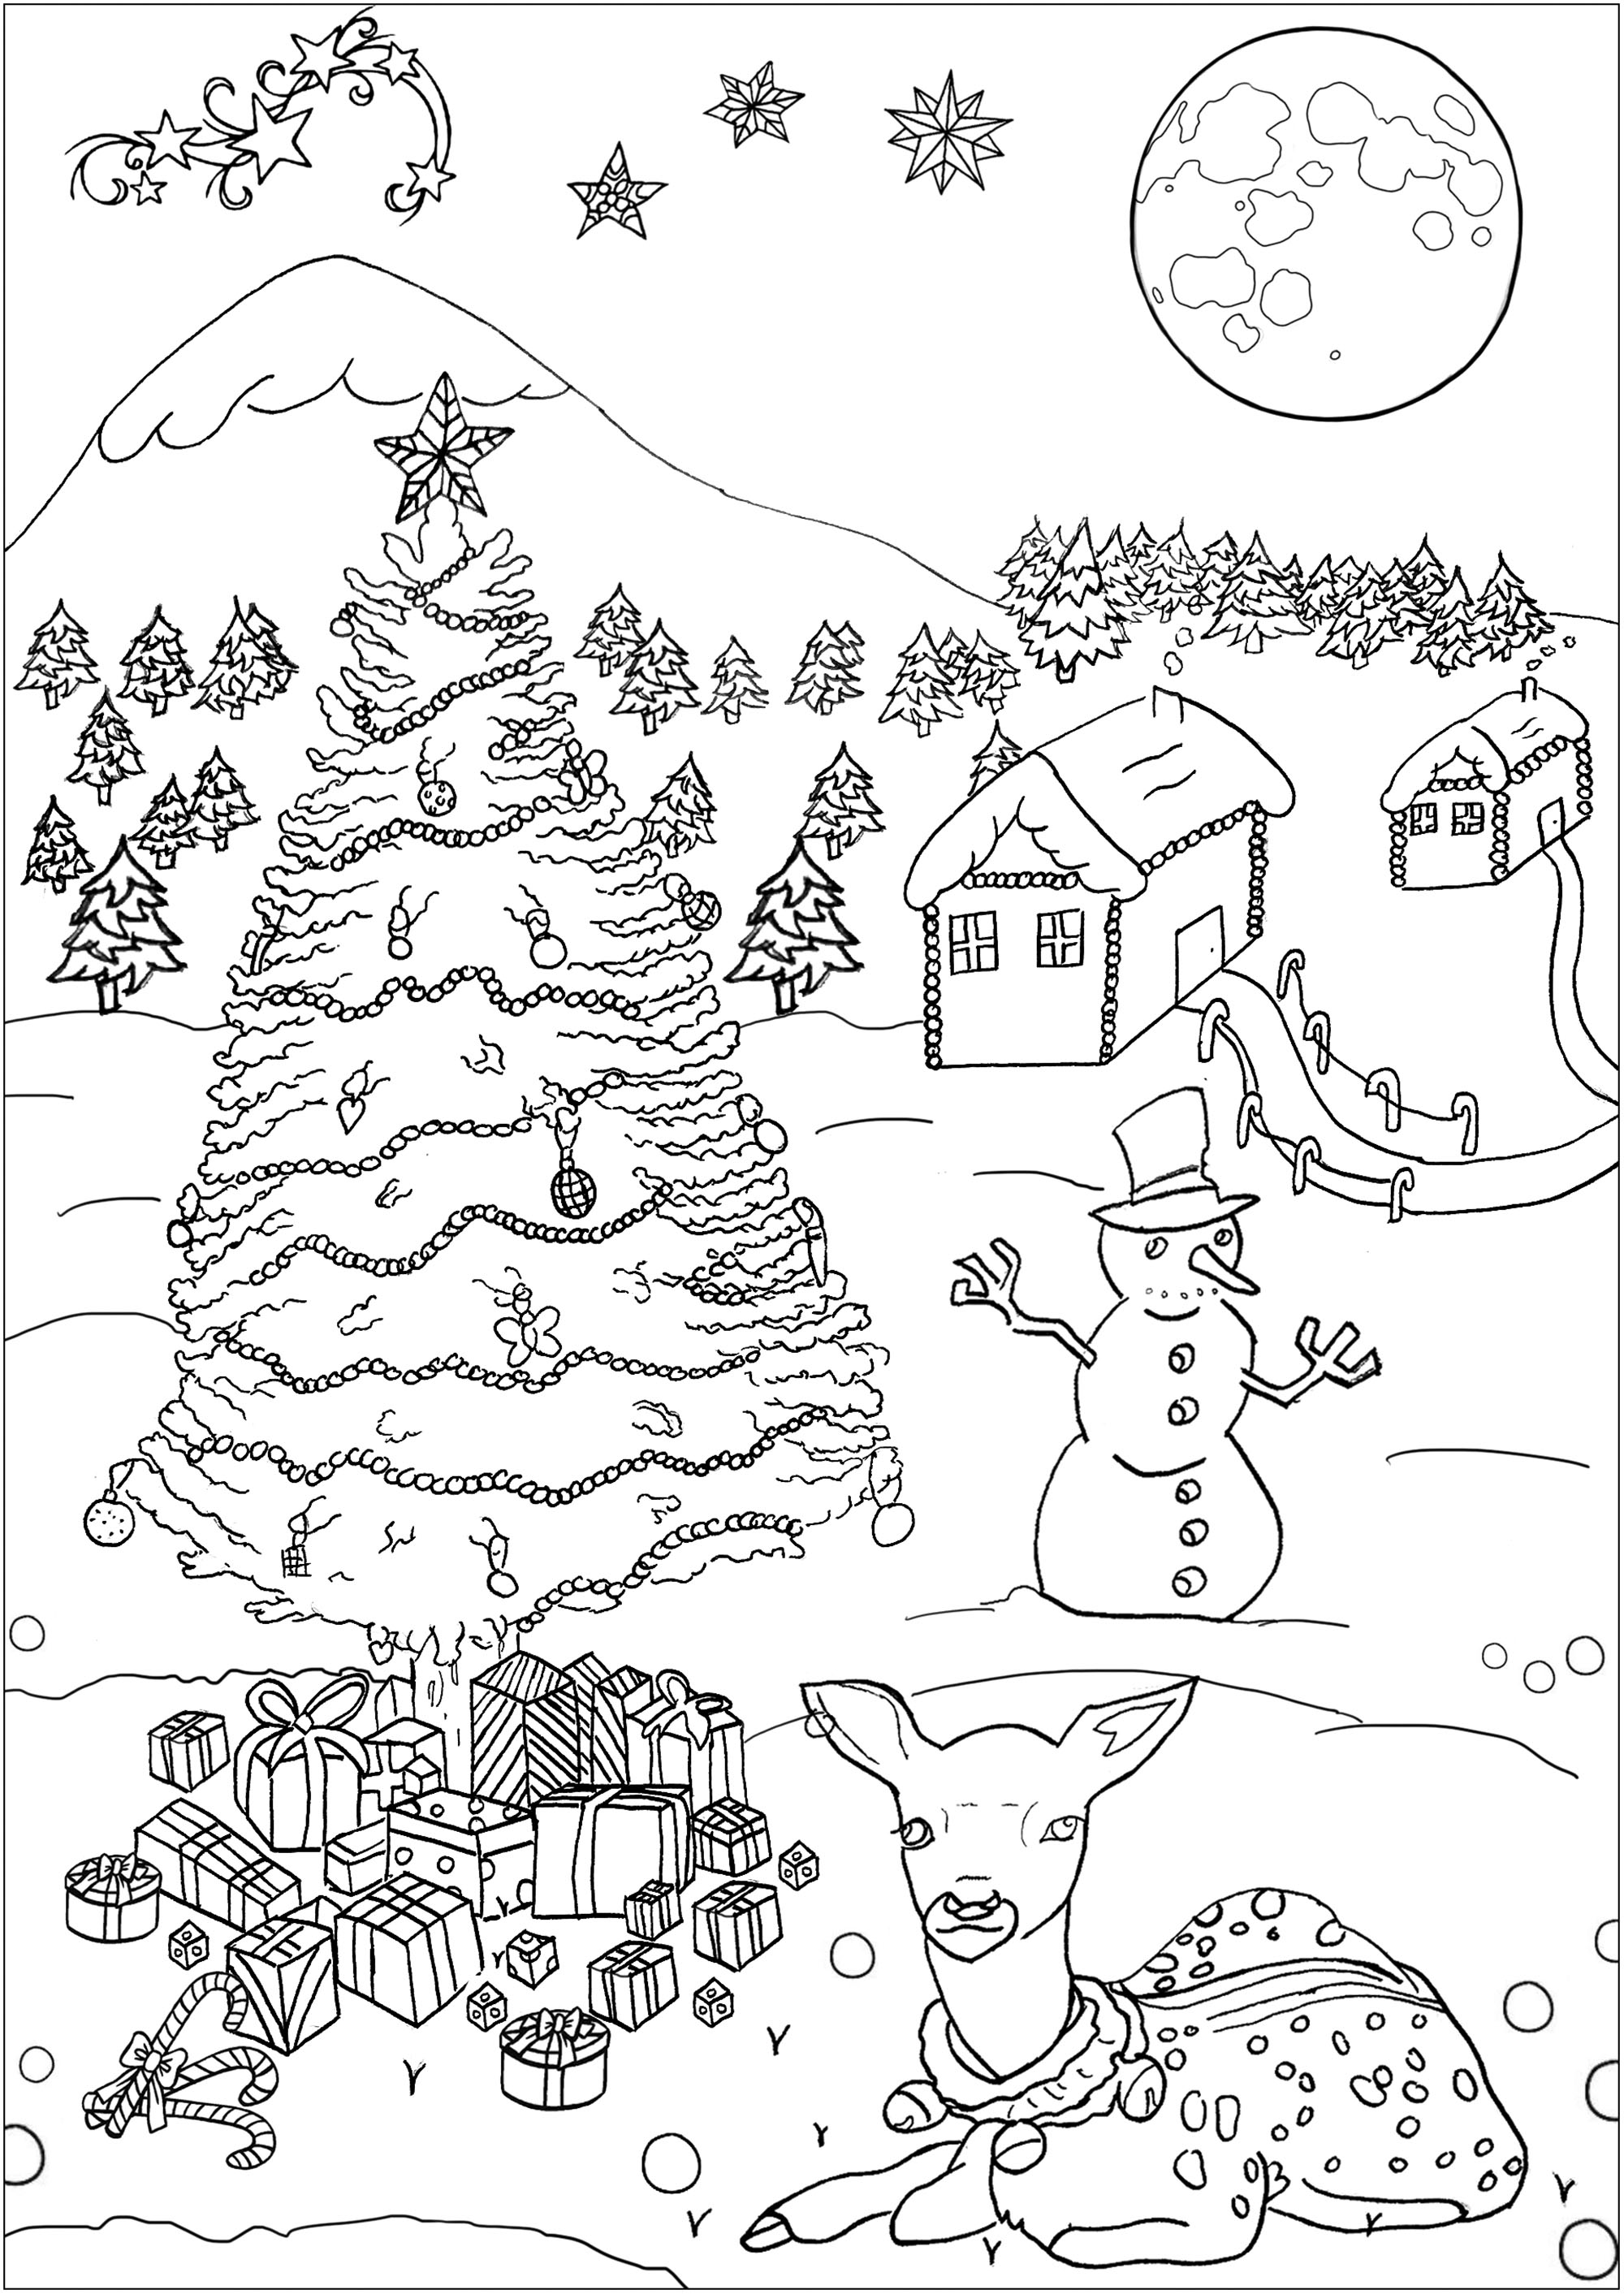 Página para colorear de Navidad, con una bonita logia, un árbol, un muñeco de nieve, regalos y una simpática cierva